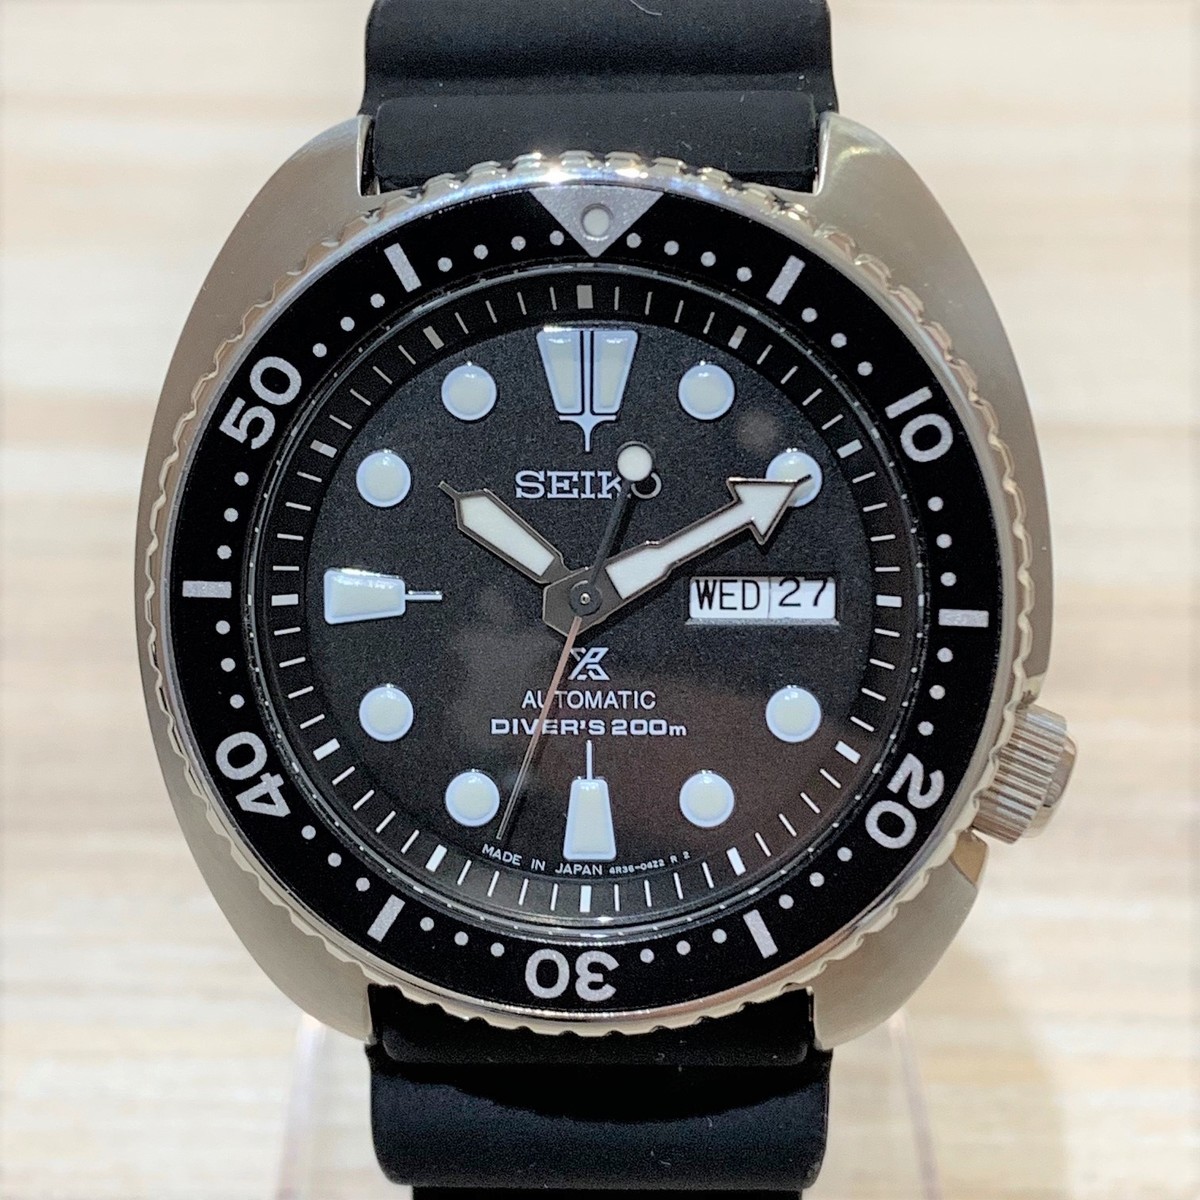 セイコーのSBDY015 プロスペックス スキューバダイバー 腕時計の買取実績です。